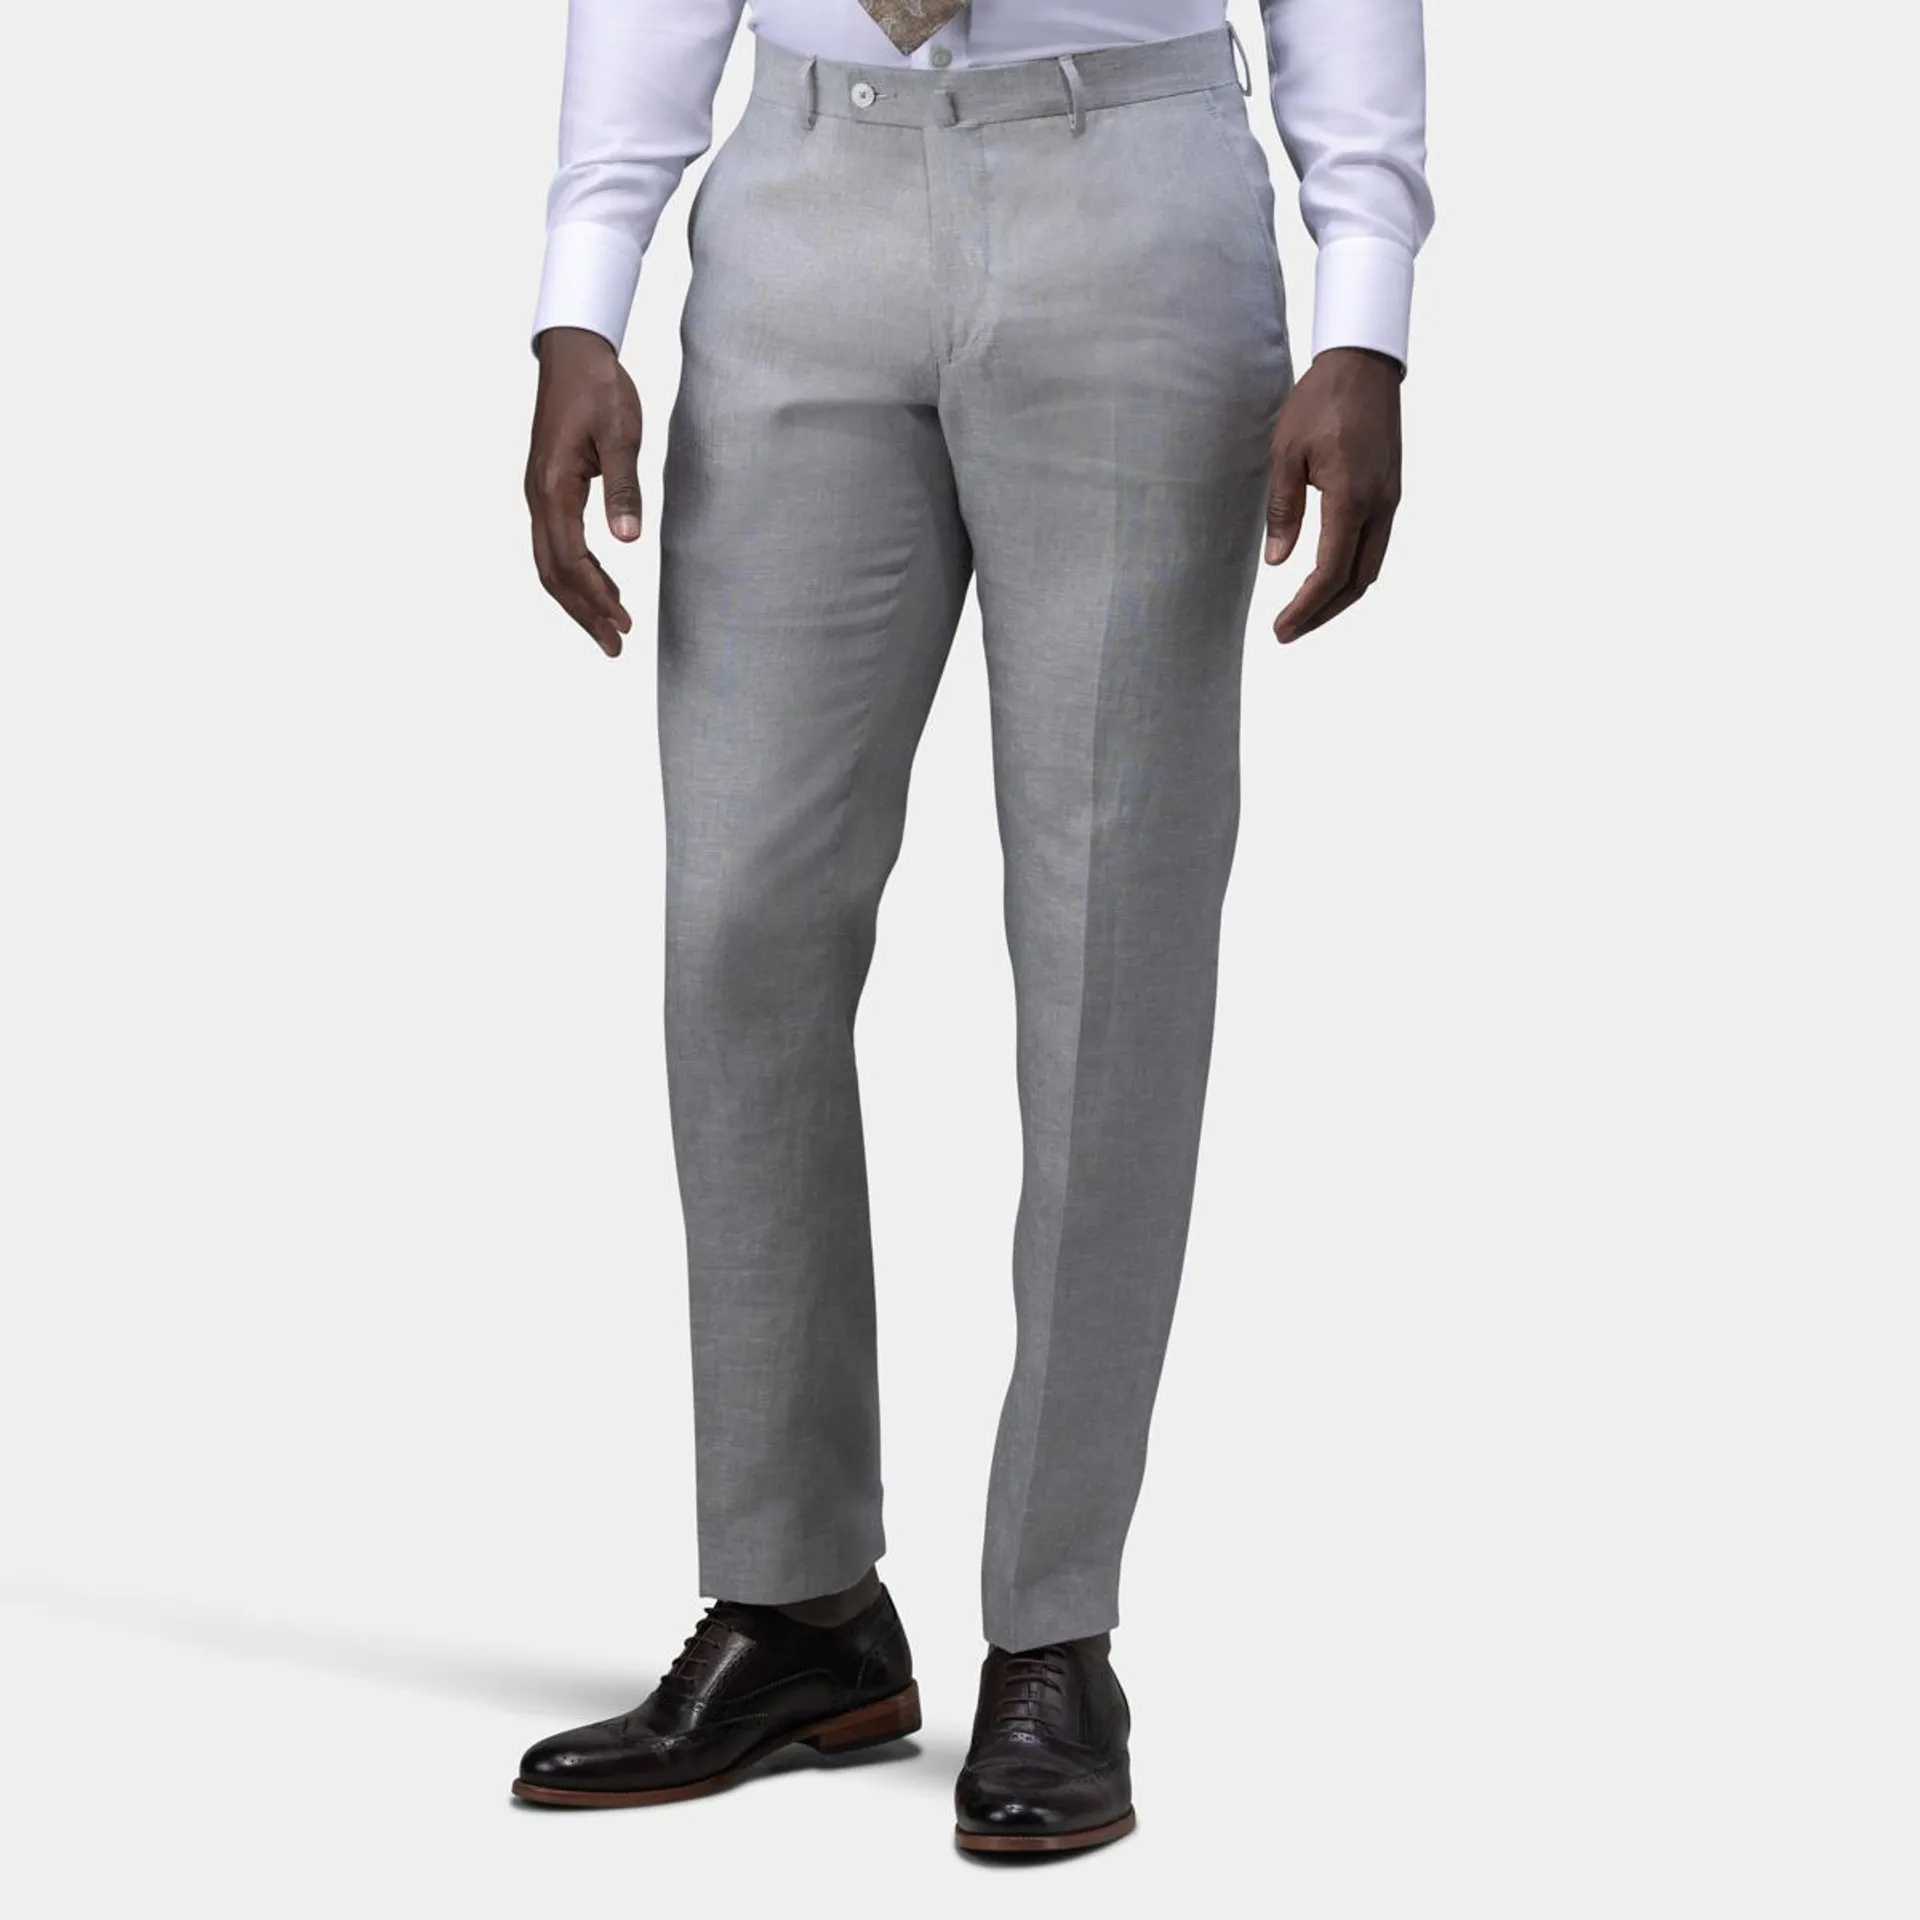 Light gray suit pants